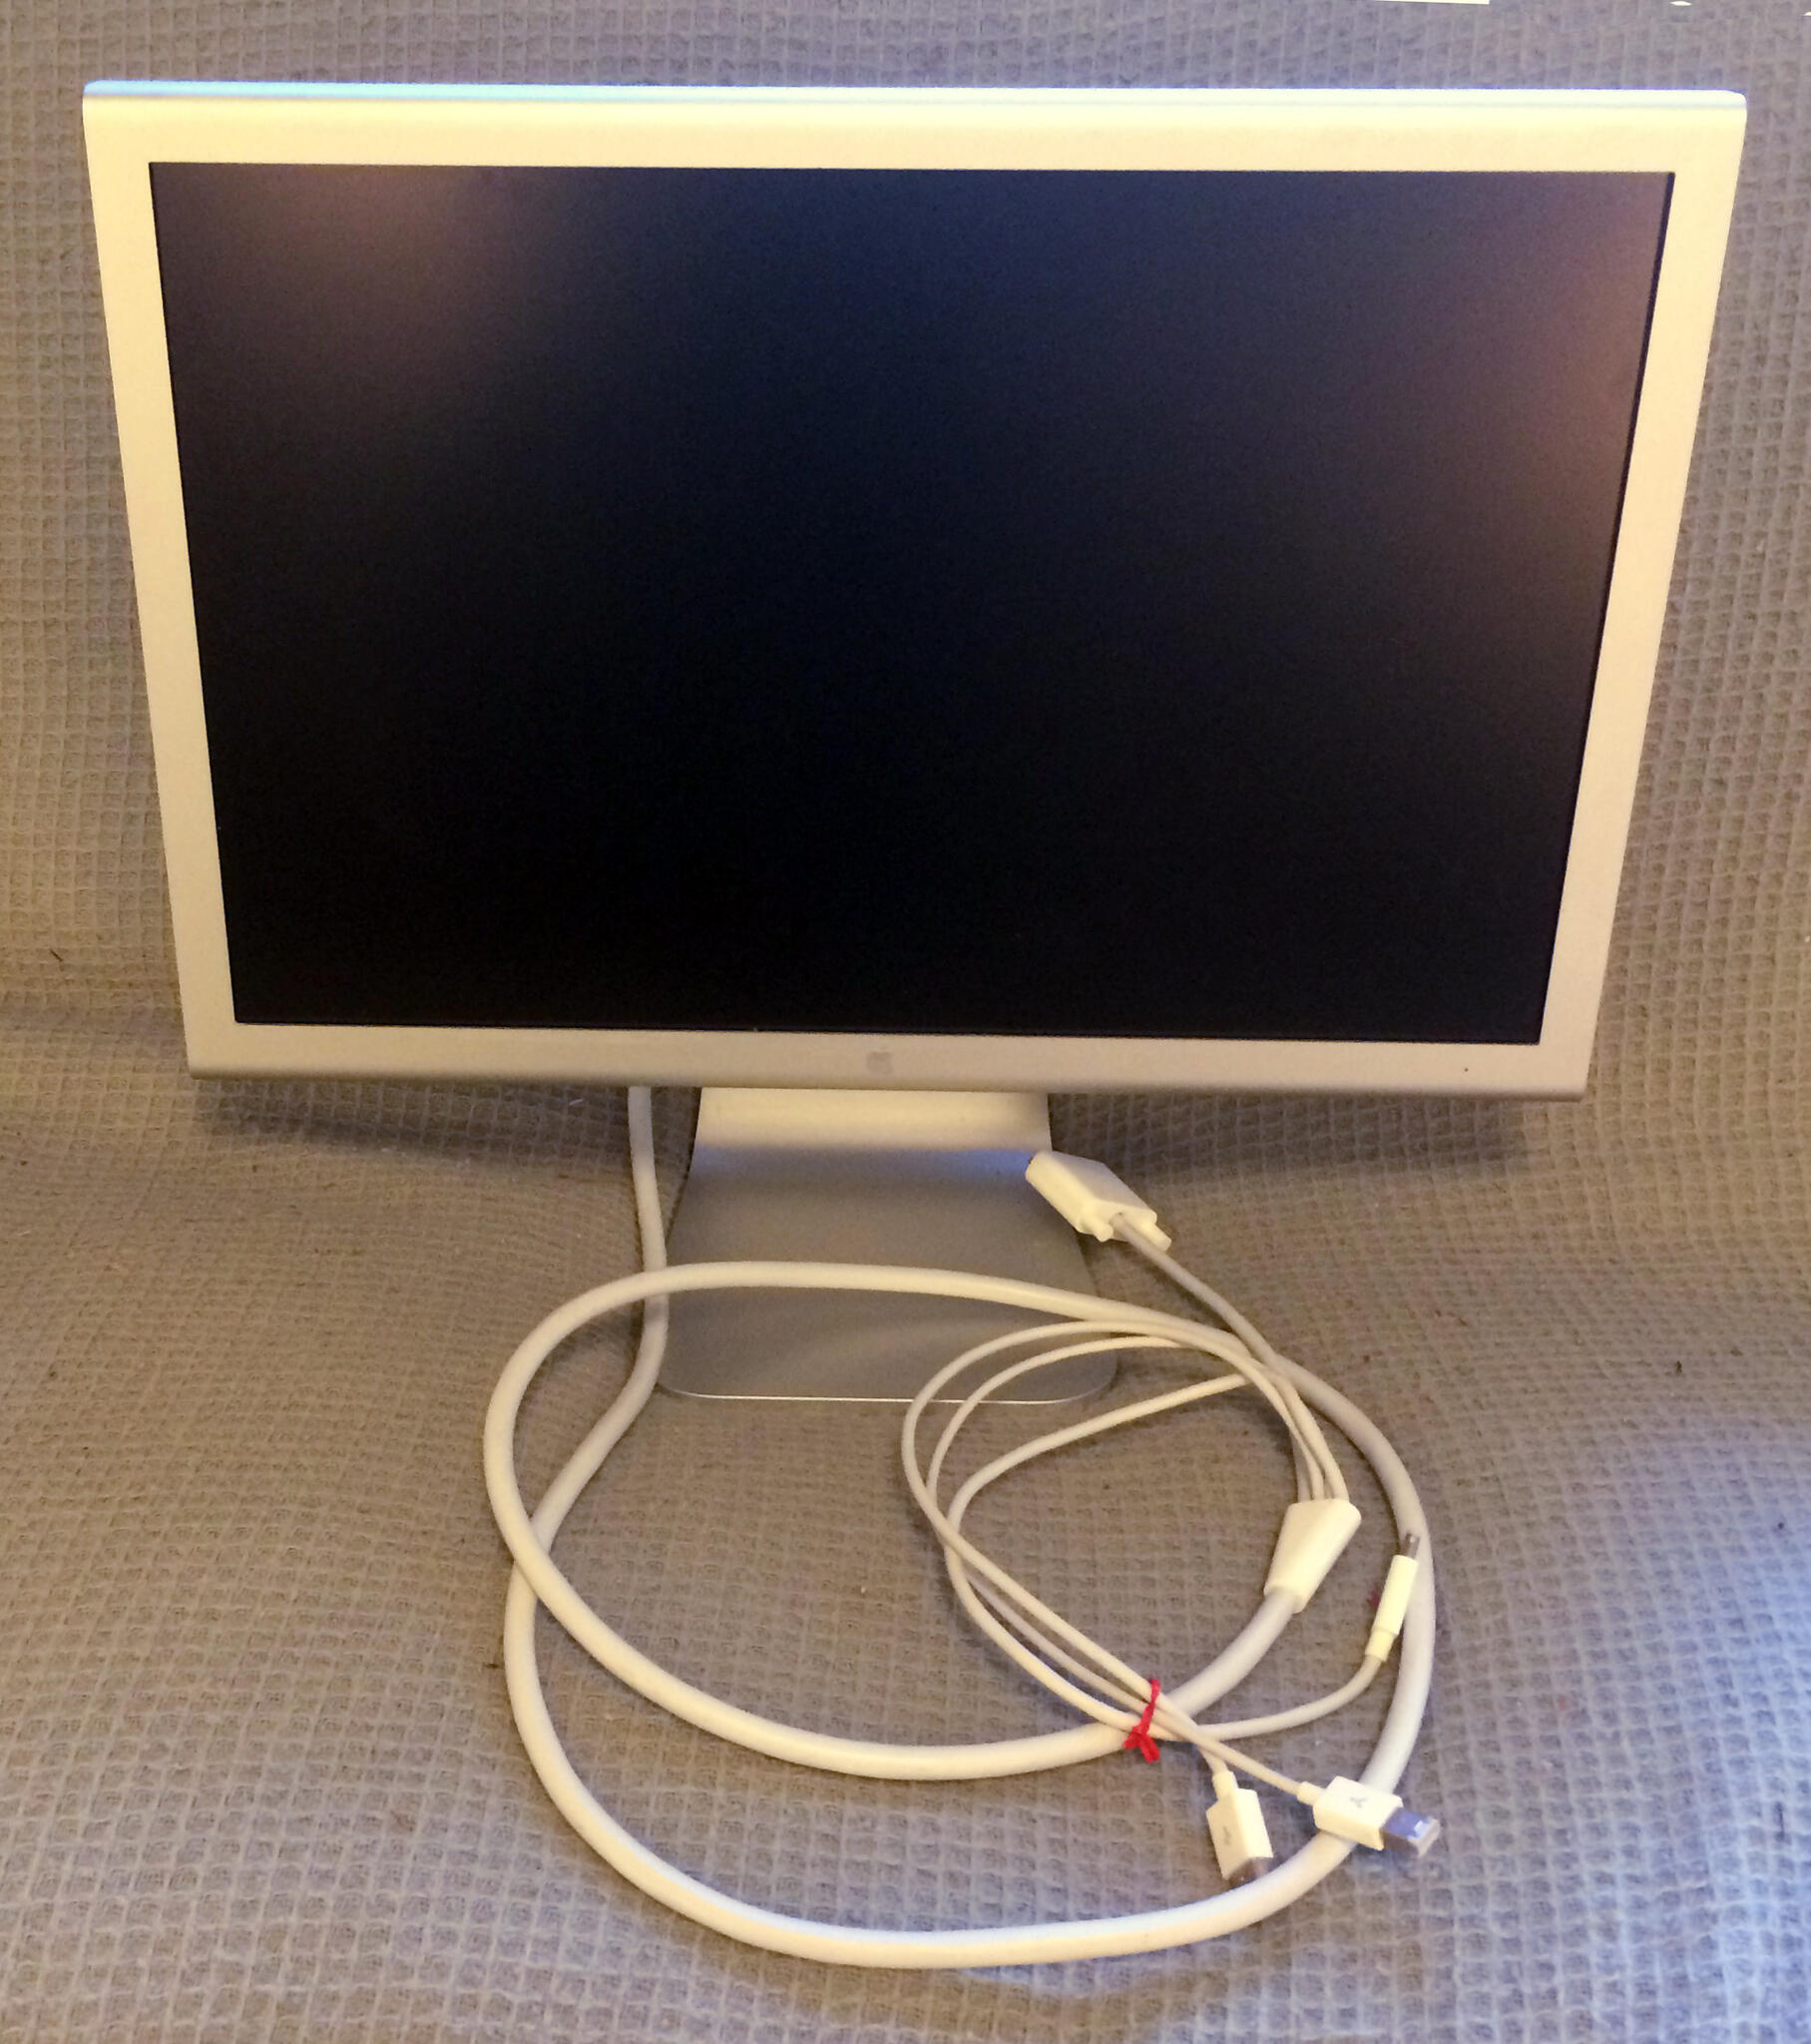 50 Apple Monitor Inch Cinema Display 05 A1081 Nextdoor